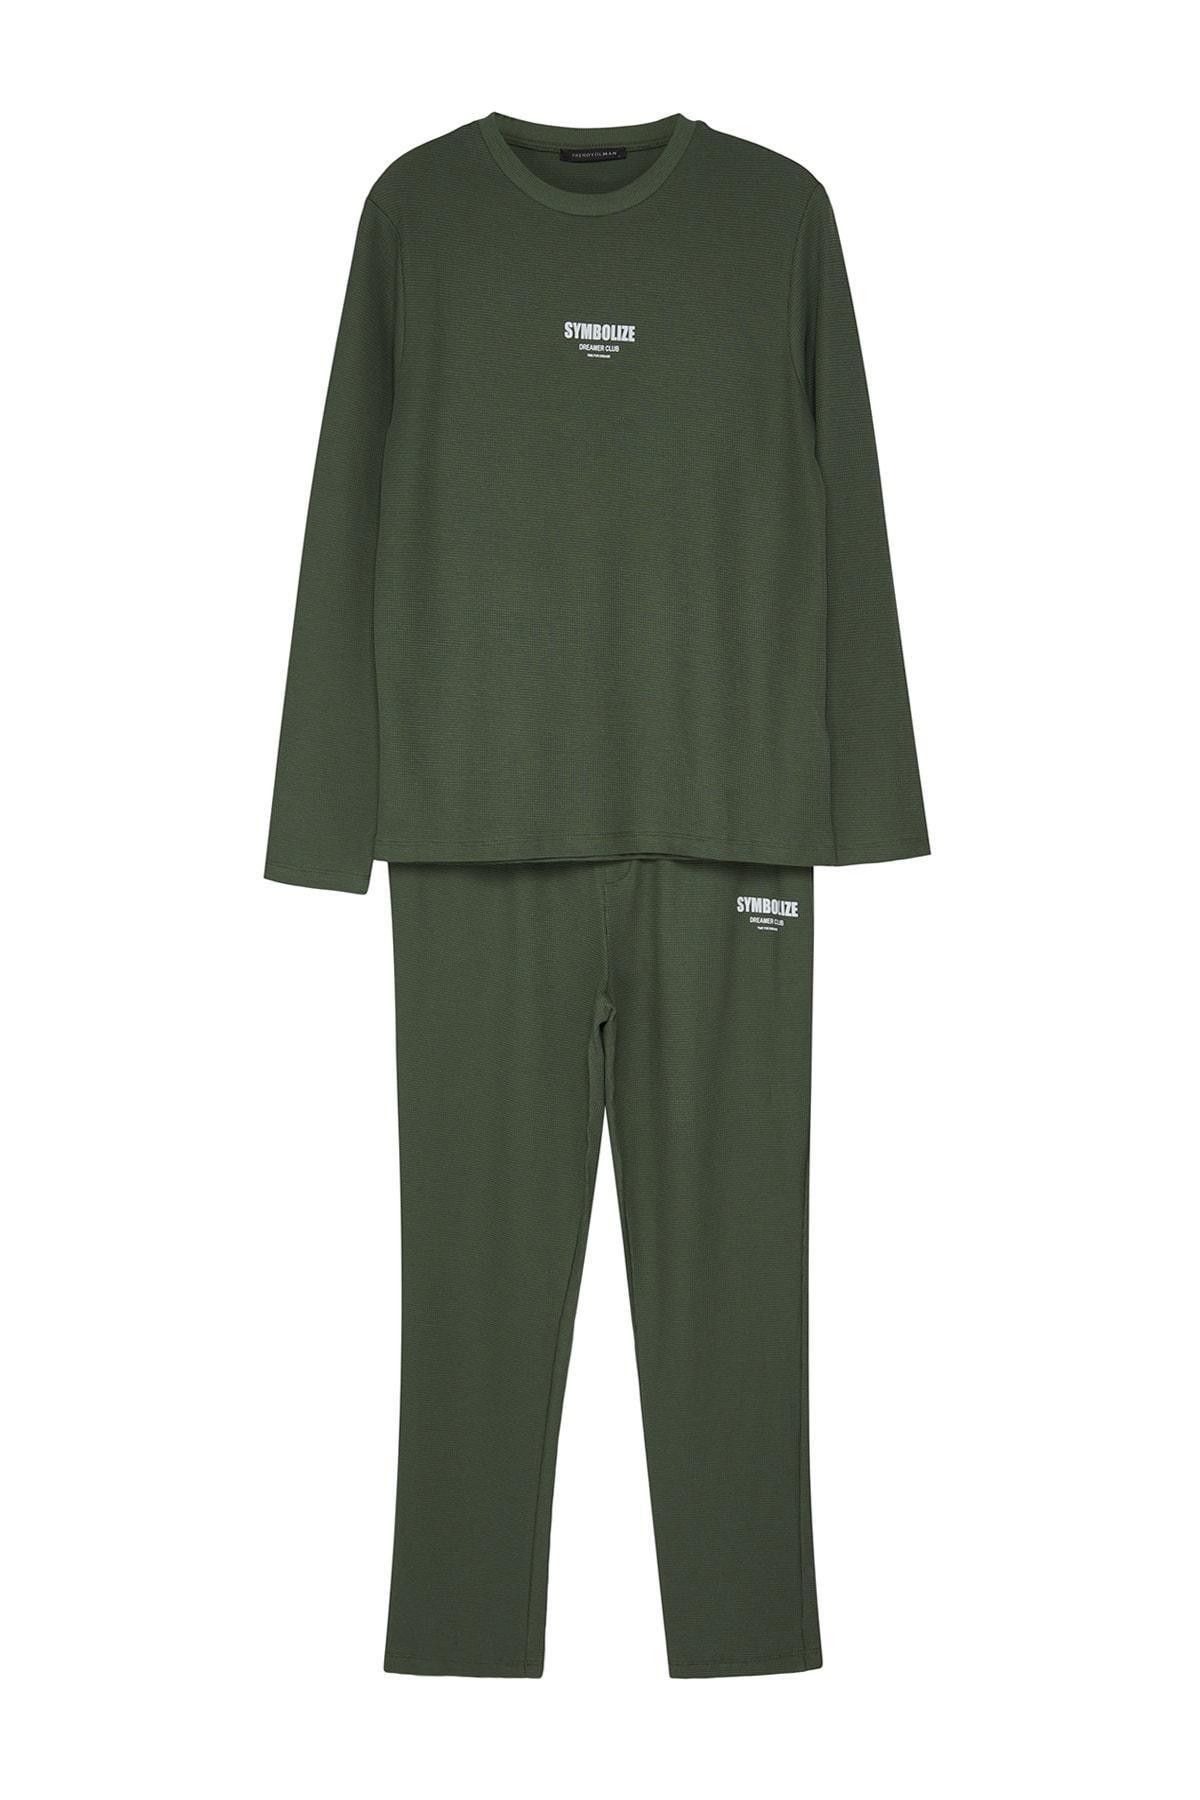 Trendyol - Khaki Regular Printed Knitted Pyjamas Set